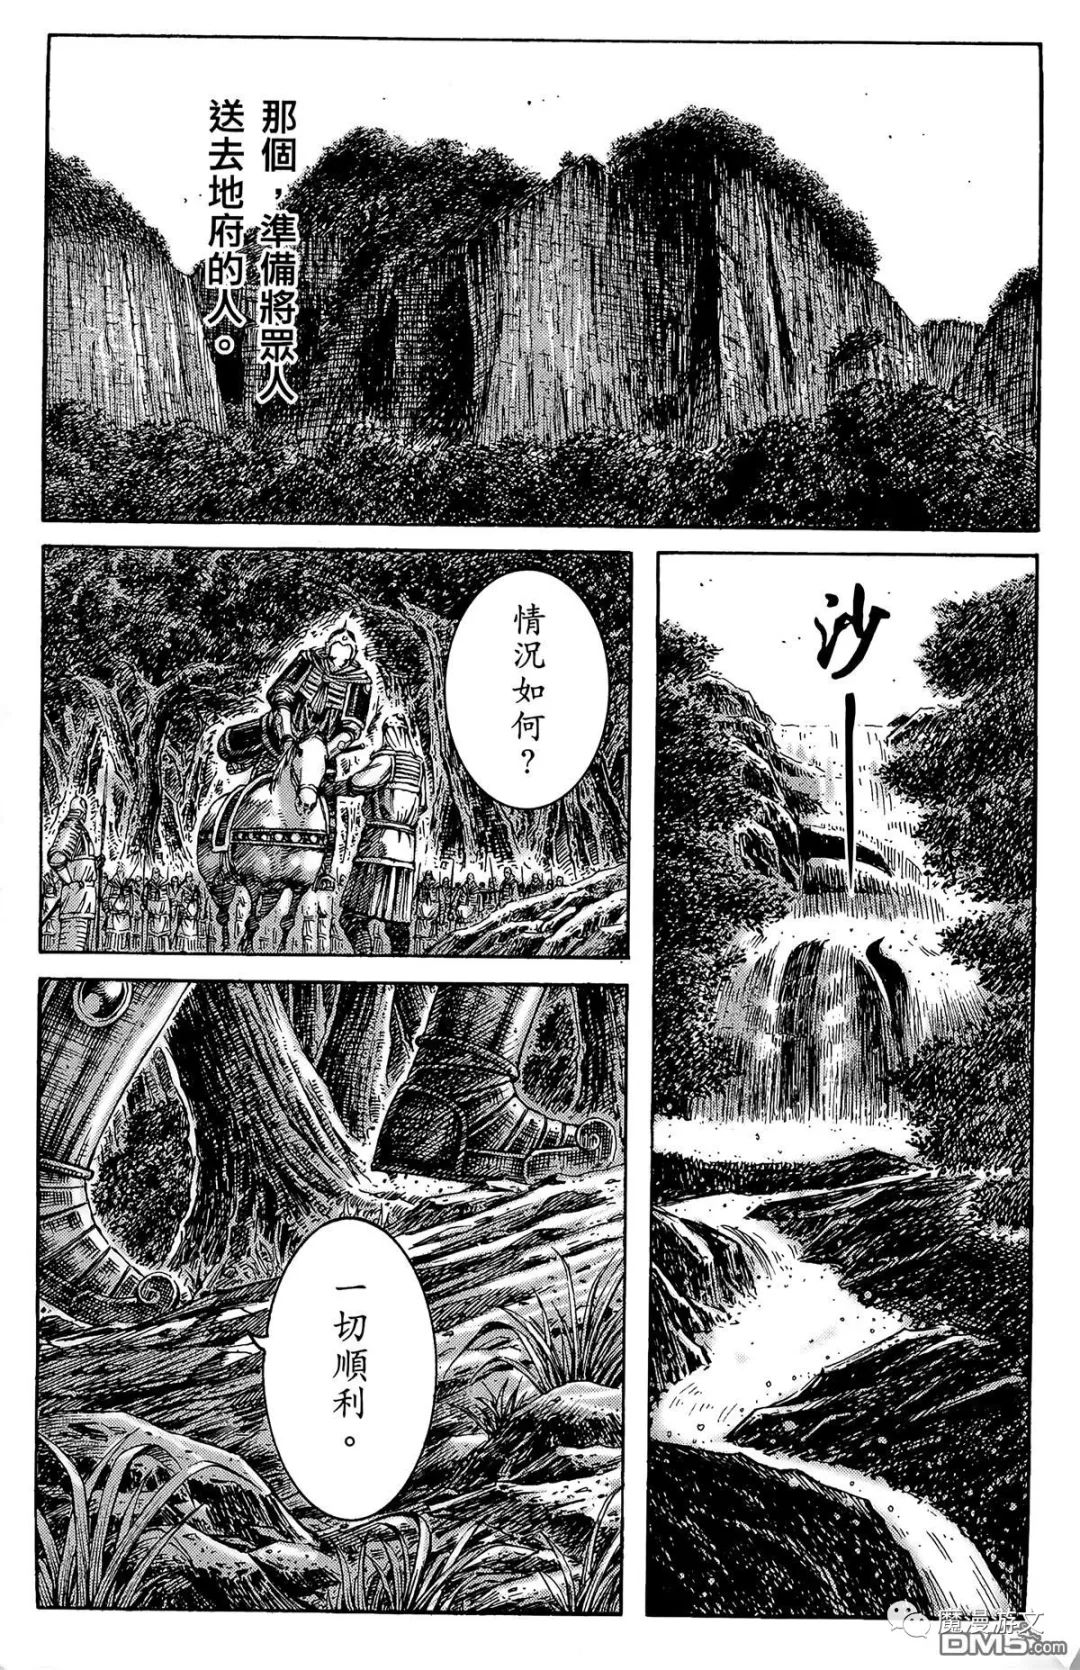 《火鳳燎原》第二十八卷 戲劇 第184張